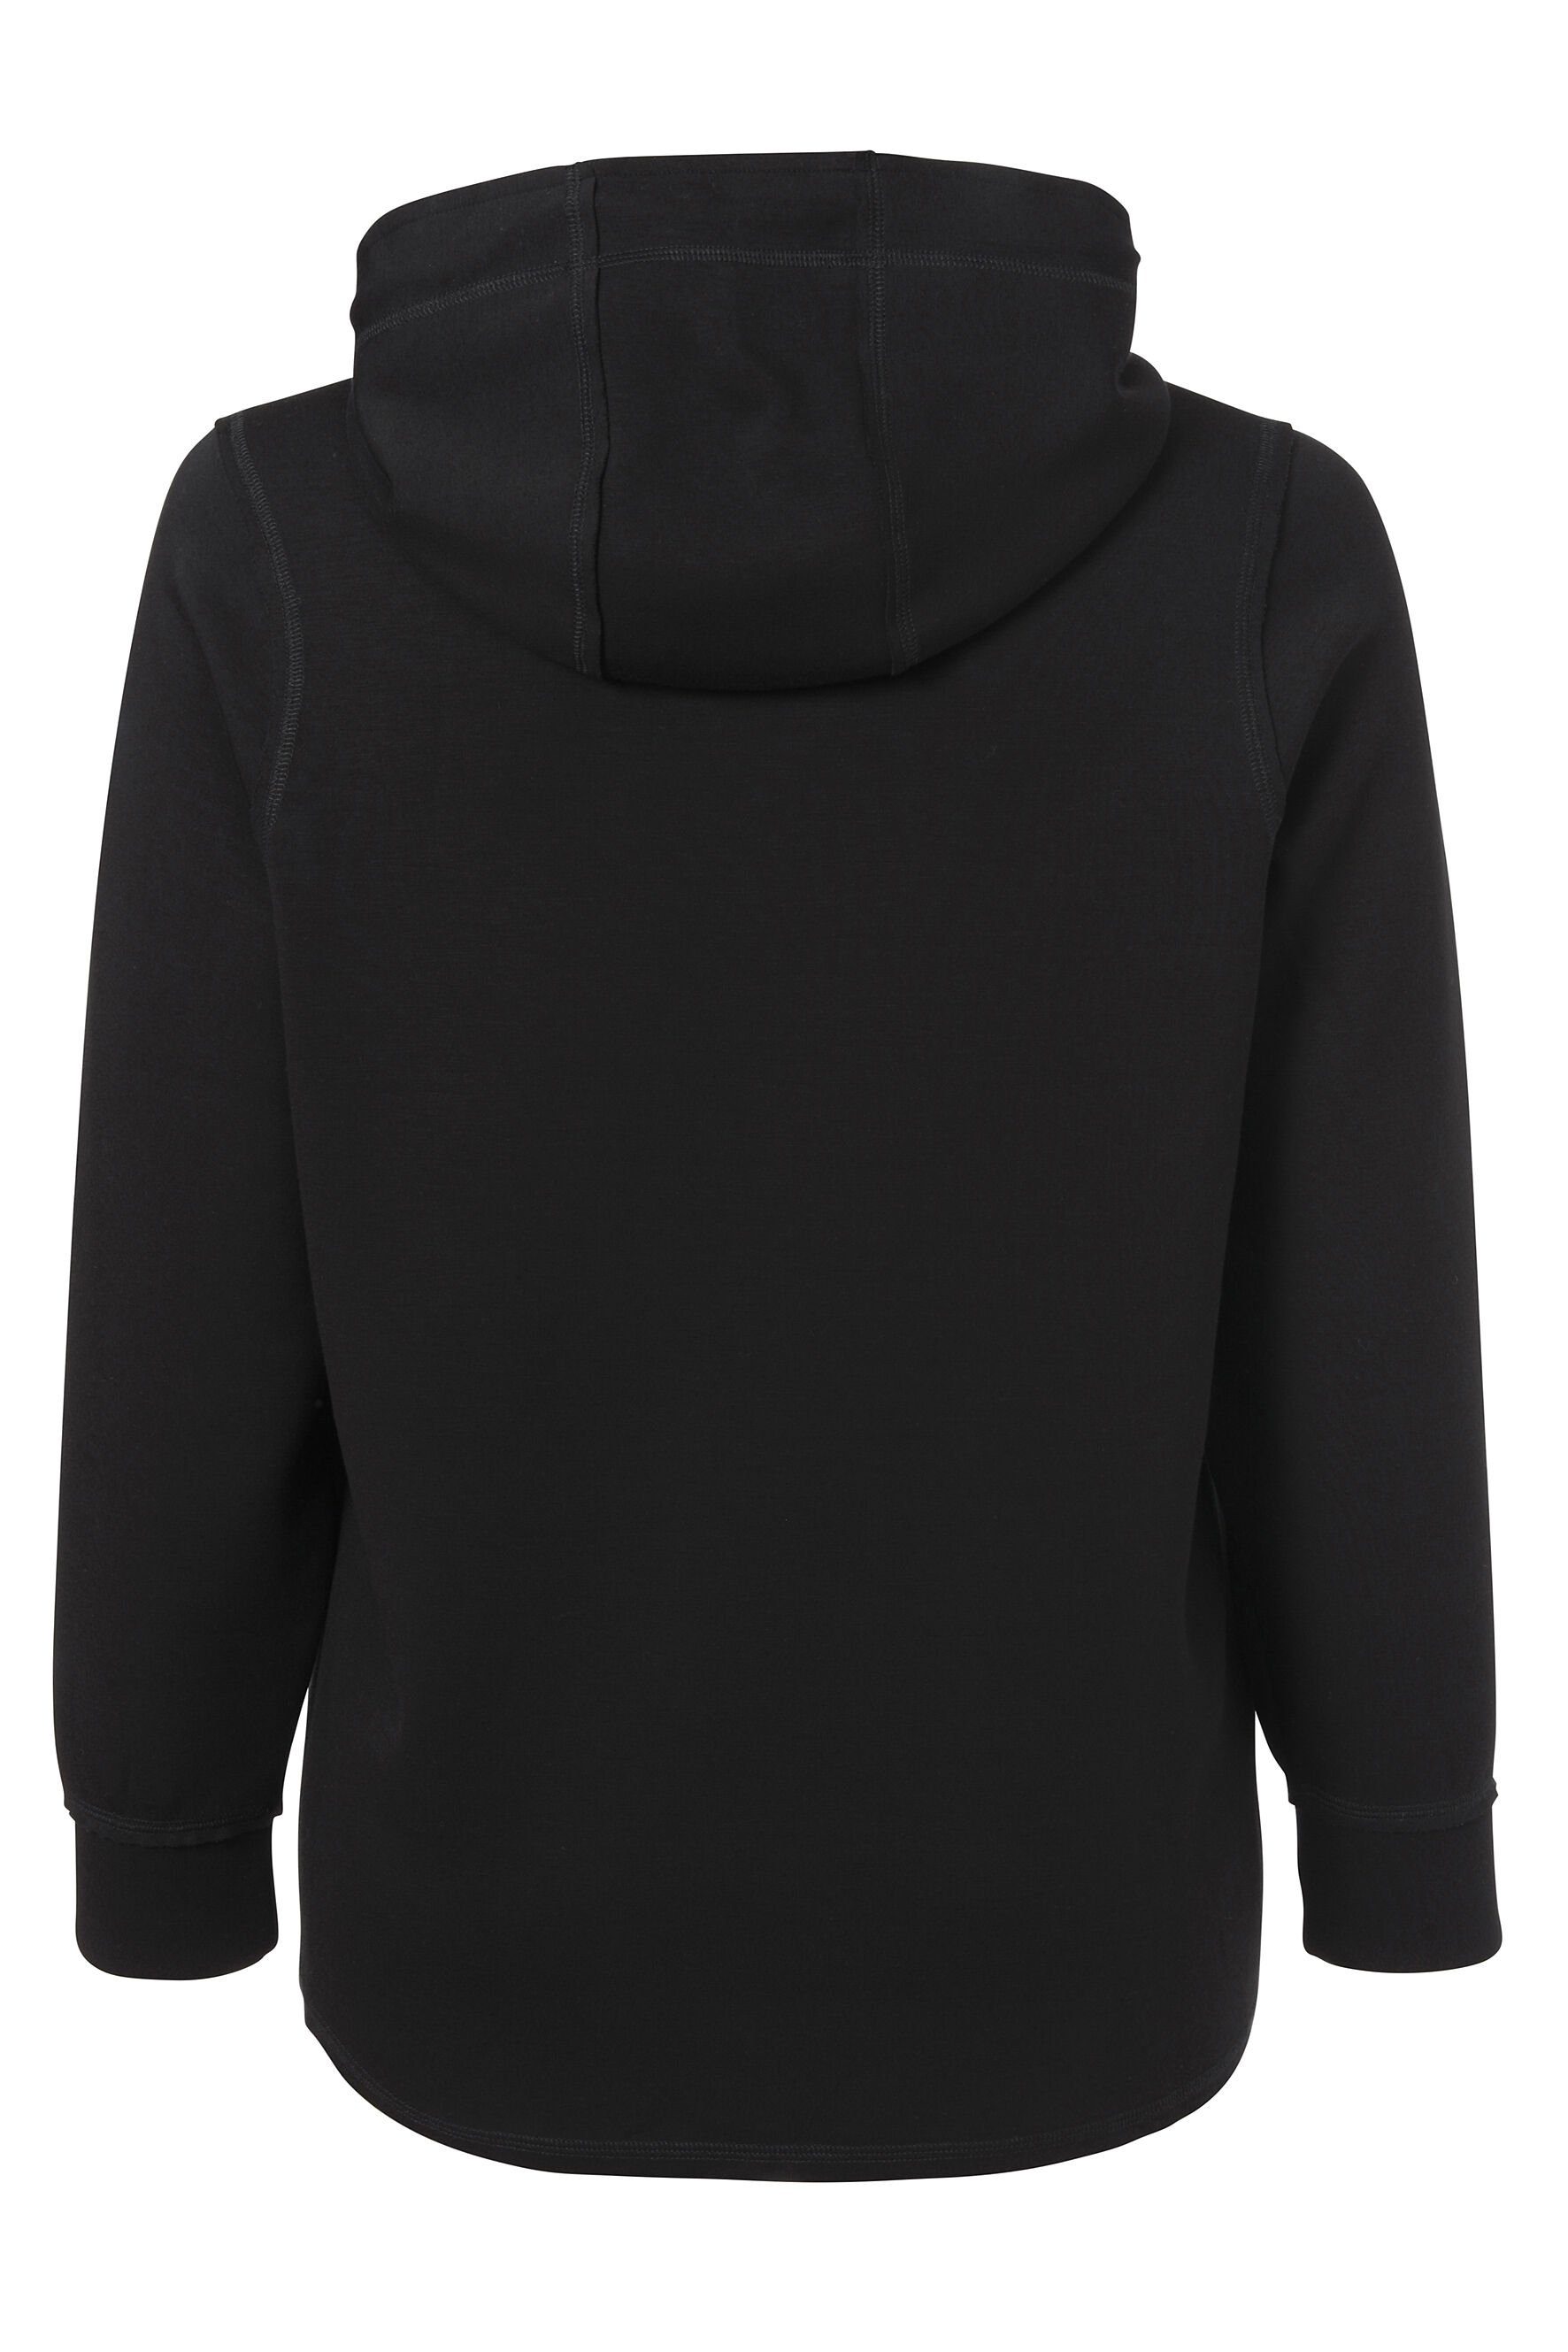 FRAPP Sweatshirt Sportives Kapuzensweatshirt in offwhite / Stil black glänzenden Glitzerdetails mit unifarbenem